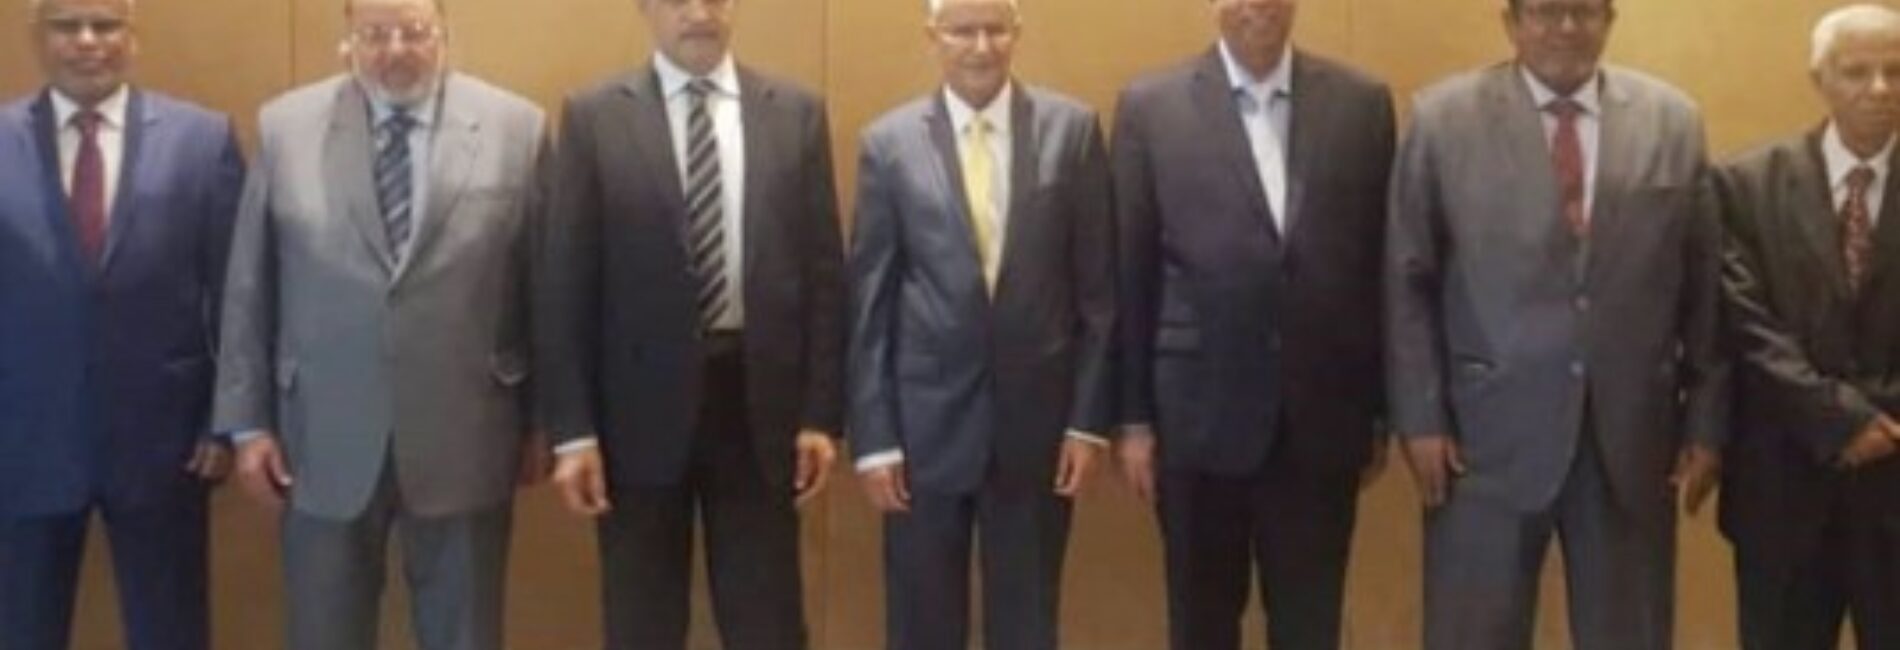 عقد مجلس إدارة شركة الخطوط الجوية اليمنية اليوم، برئاسة الكابتن احمد مسعود العلواني اجتماعه الدوري